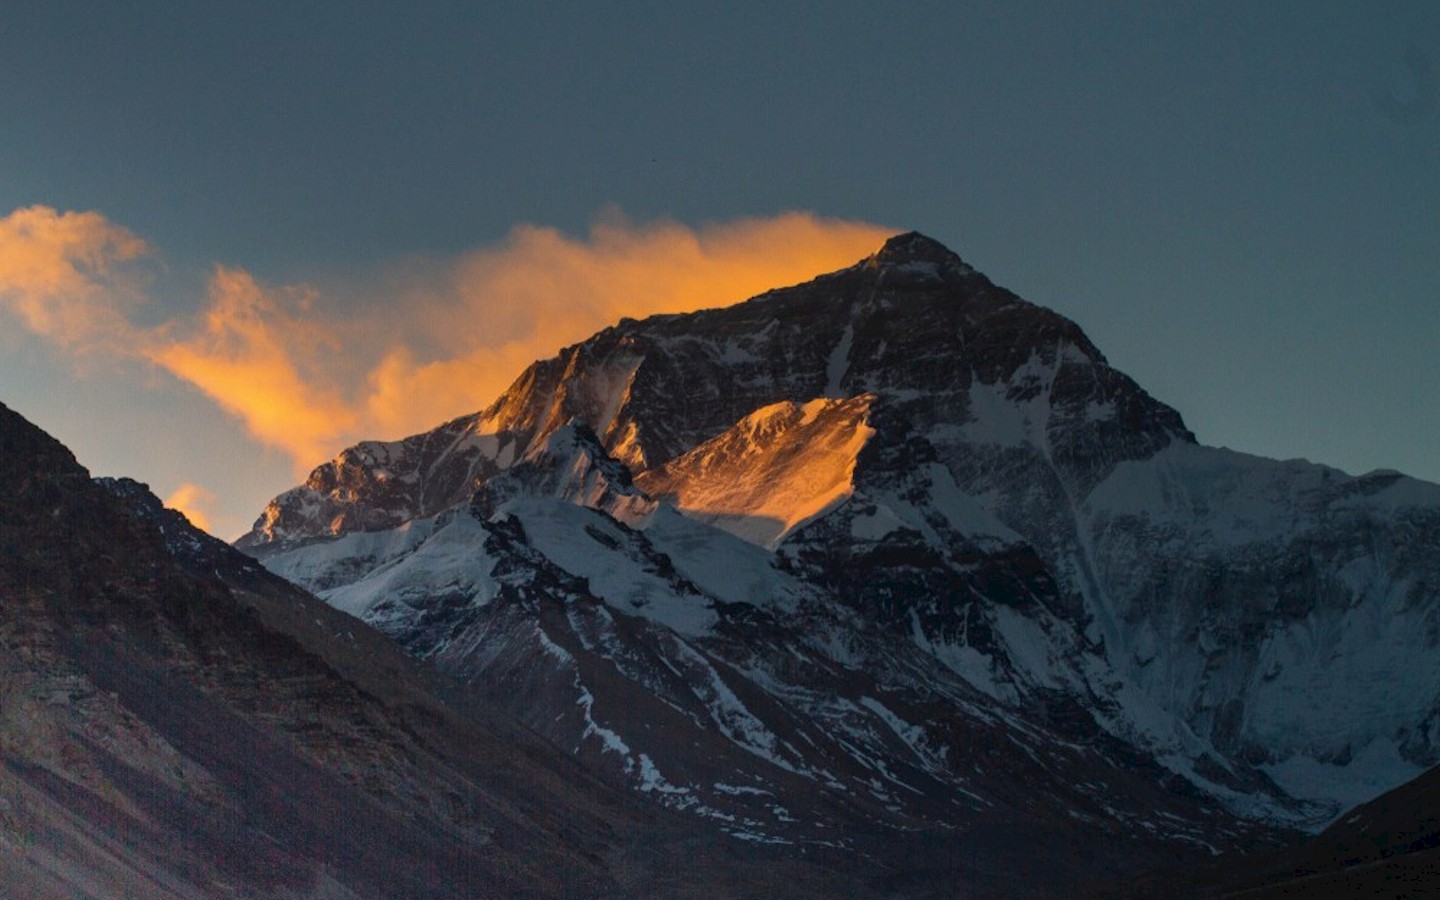 De Mount Everest [Nepalees: सगरमाथा] is de hoogste berg ter wereld. De berg is 8848 of 8850 meter hoog en ligt in de Himalaya op de grens van Nepal en Tibet.